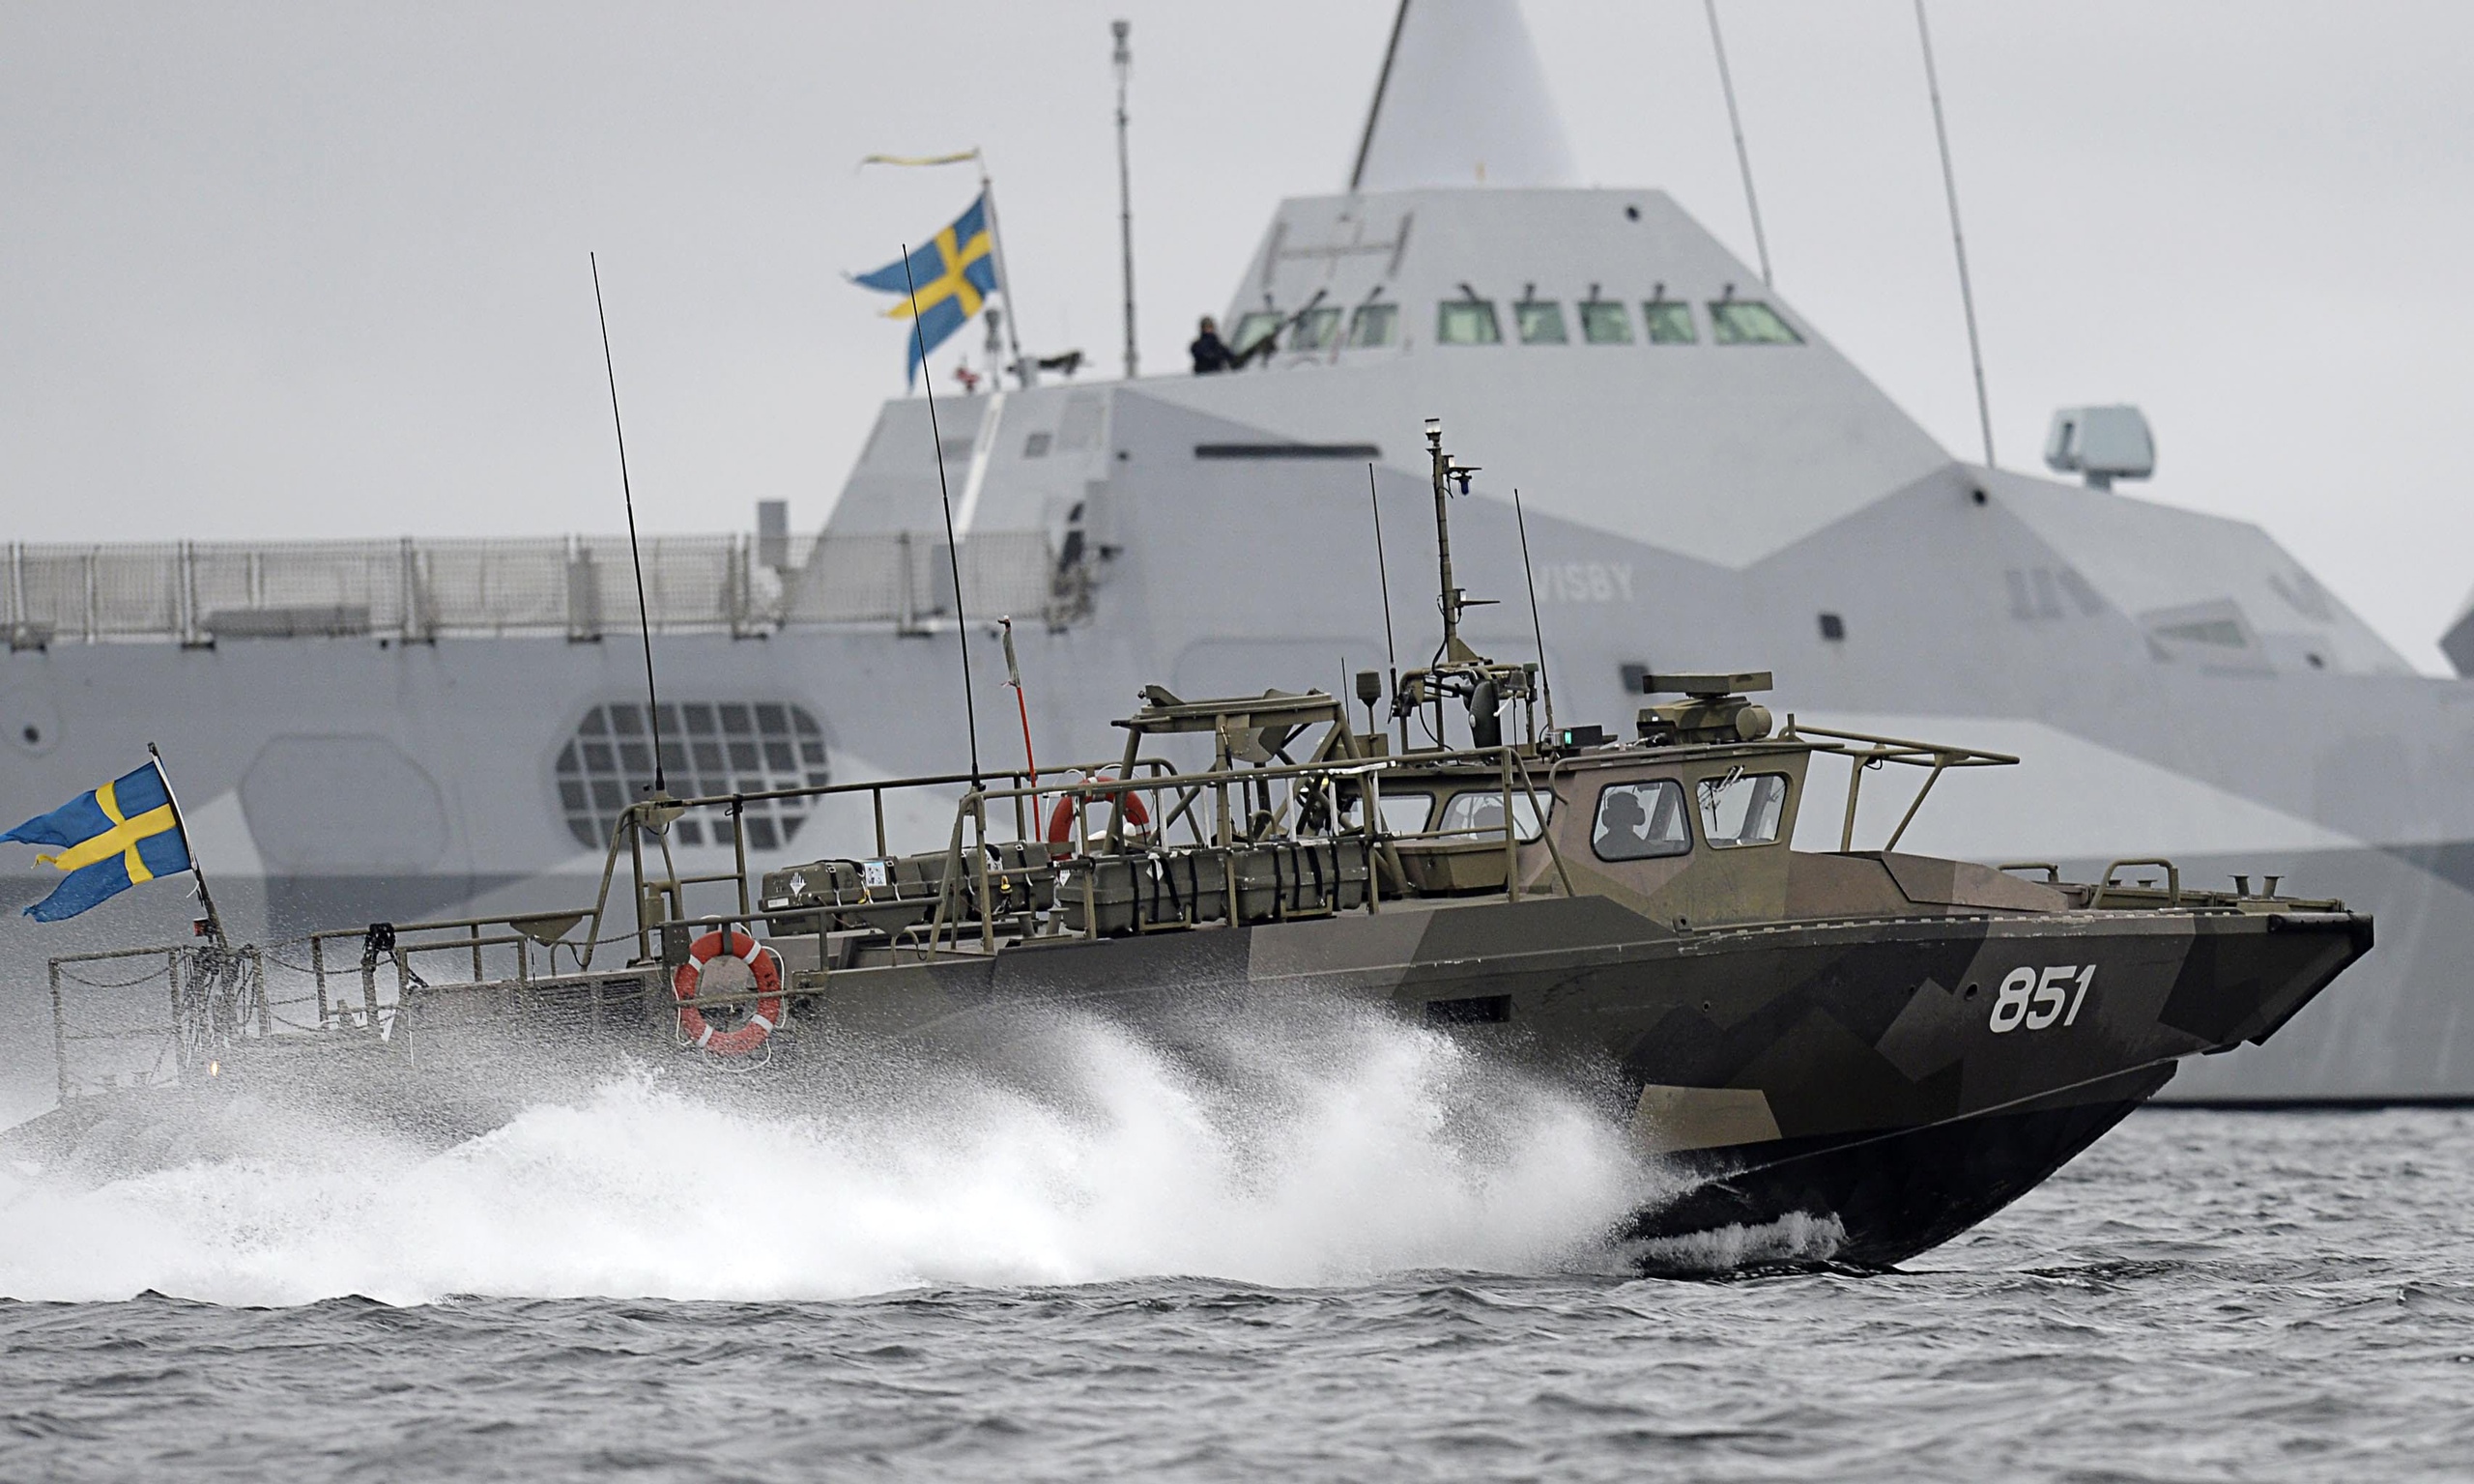 Zweedse regering: Er was geen Russische onderzeeër